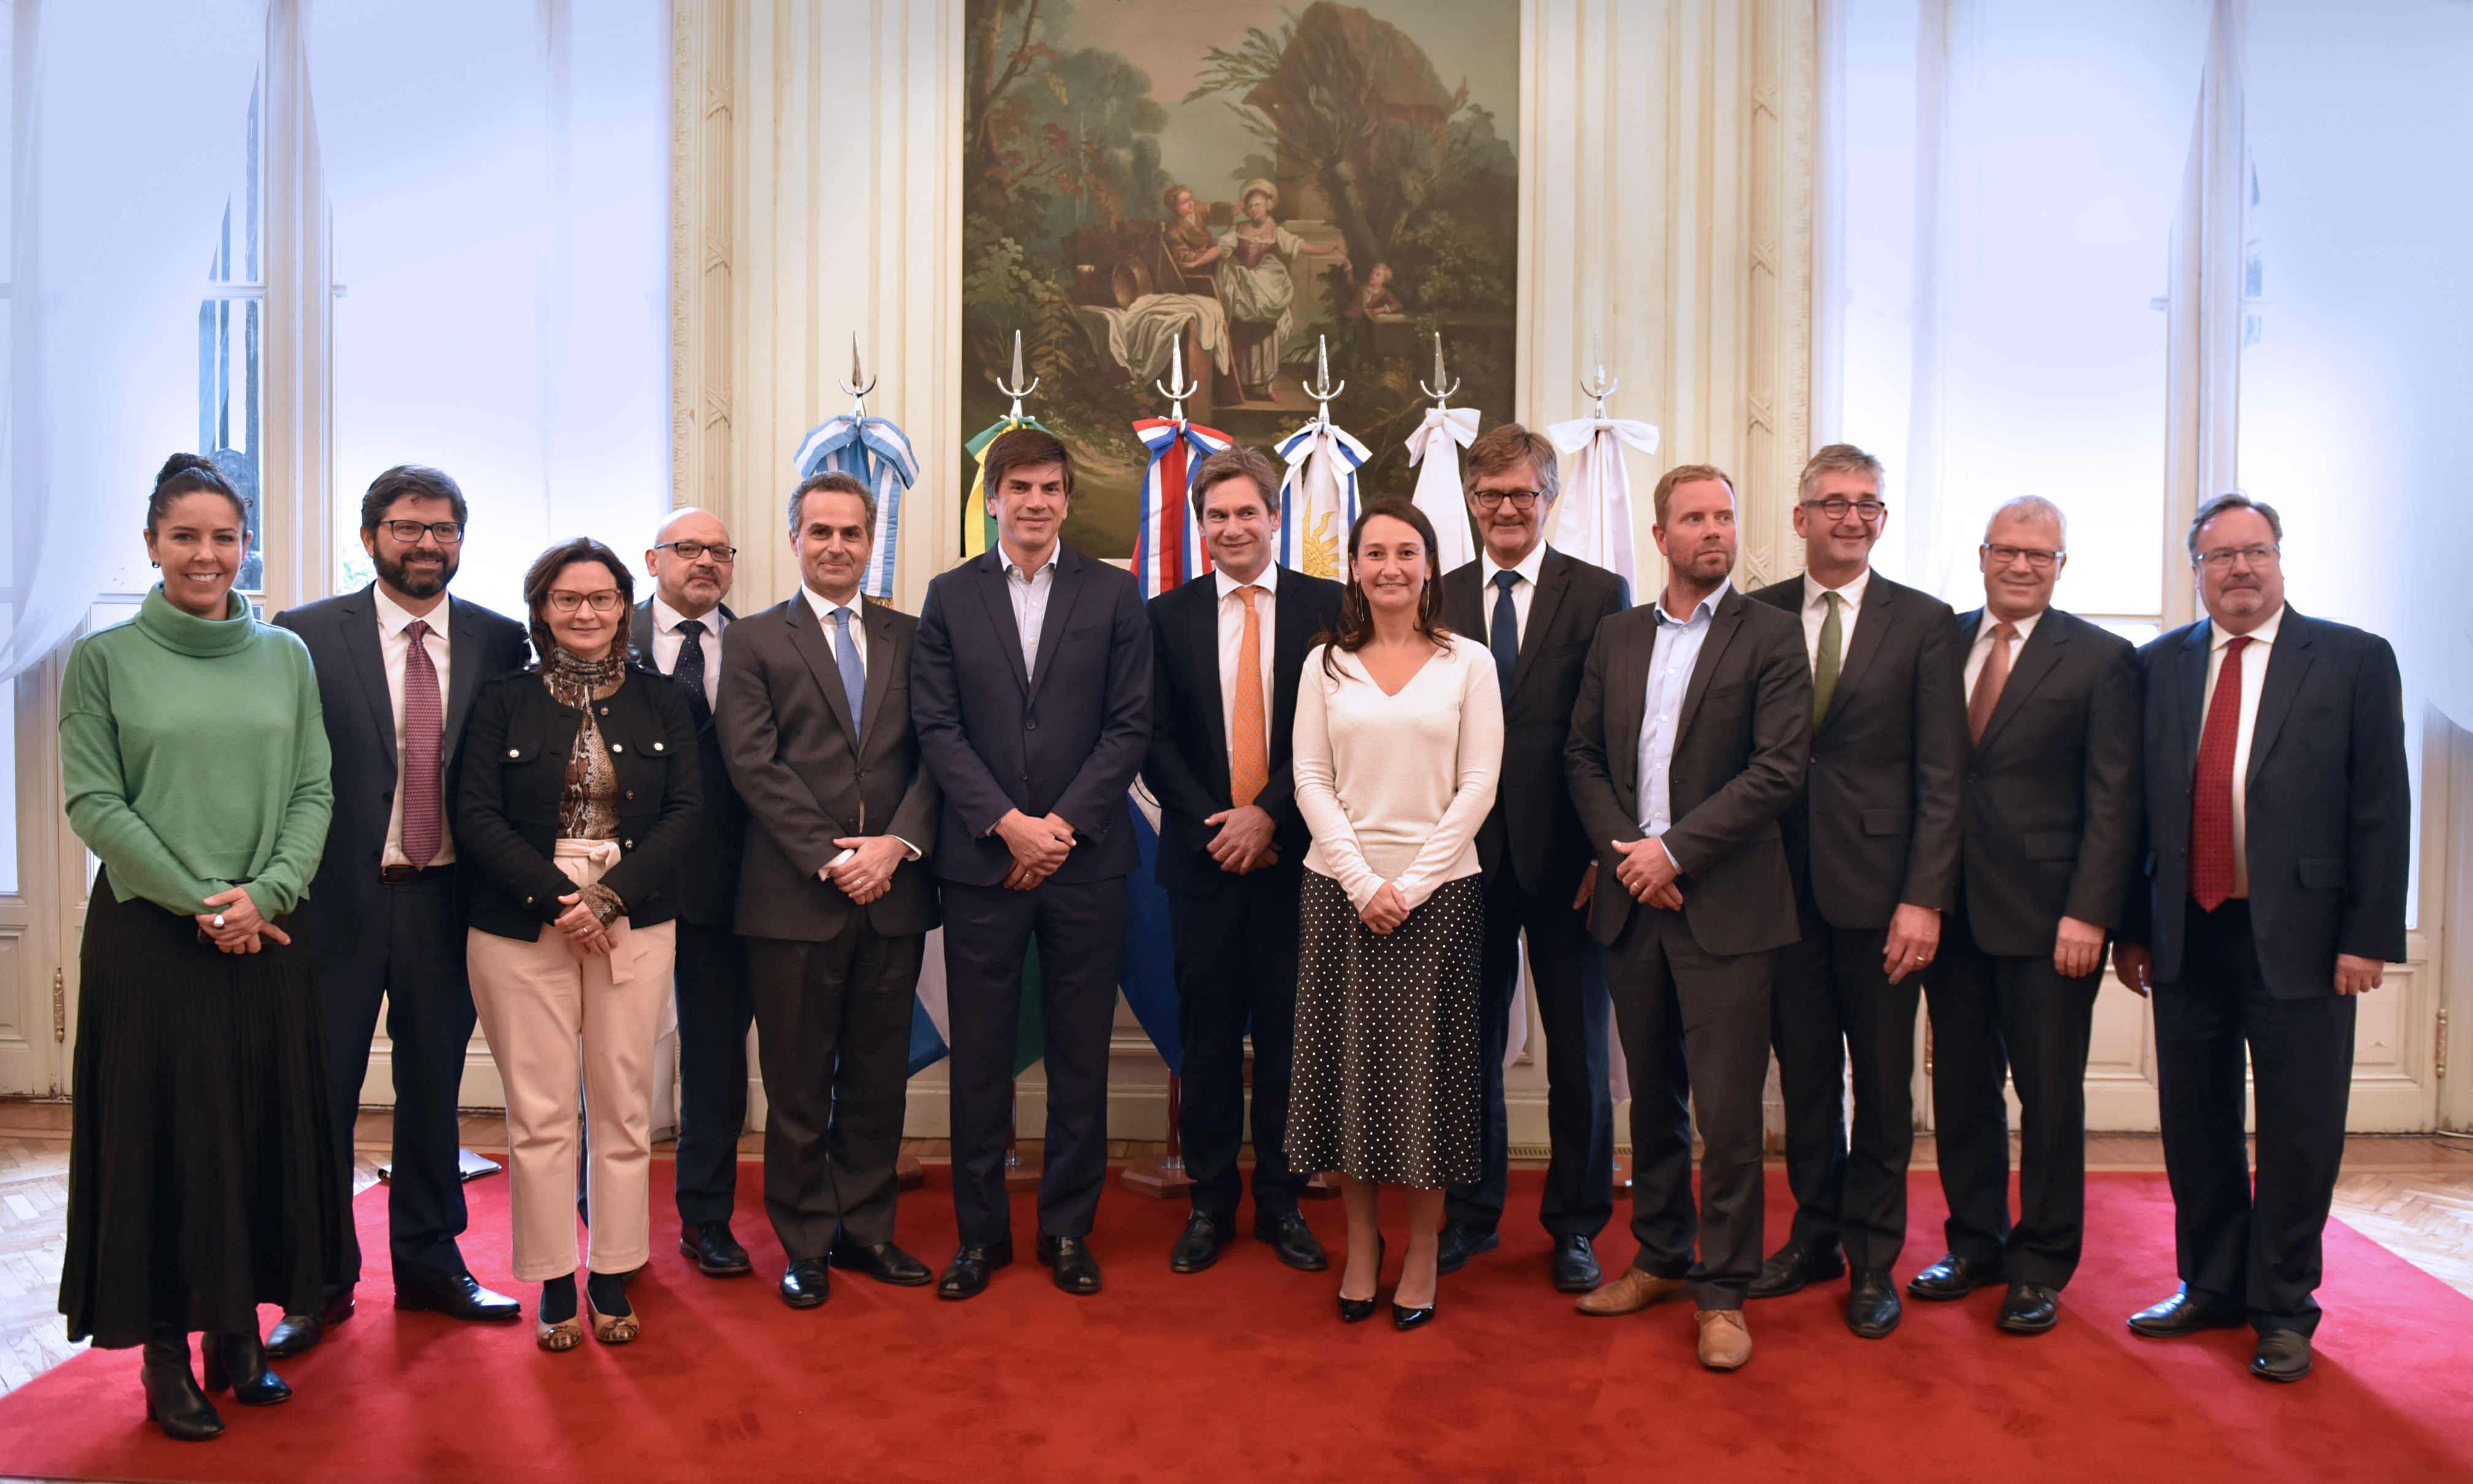 Les délégations de l’AELE et du Mercosur lors de la conclusion des négociations, le 23 août 2019 à Buenos Aires.